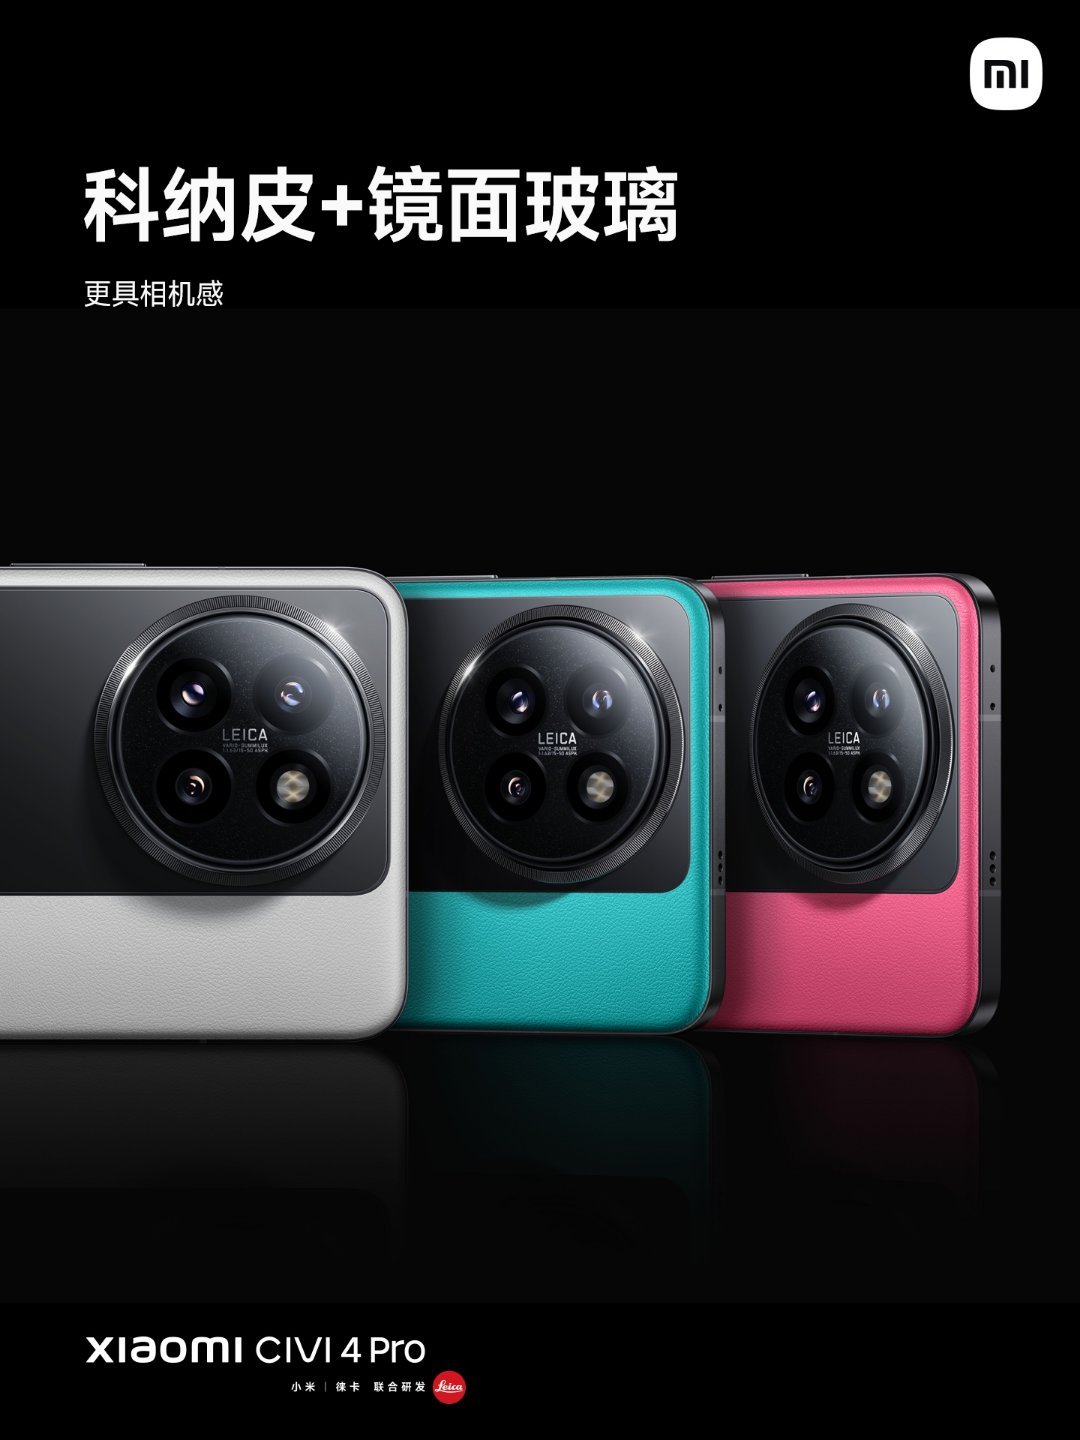 3599 元，小米 Civi 4 Pro 限量定制色手机今日开售：采用撞色设计